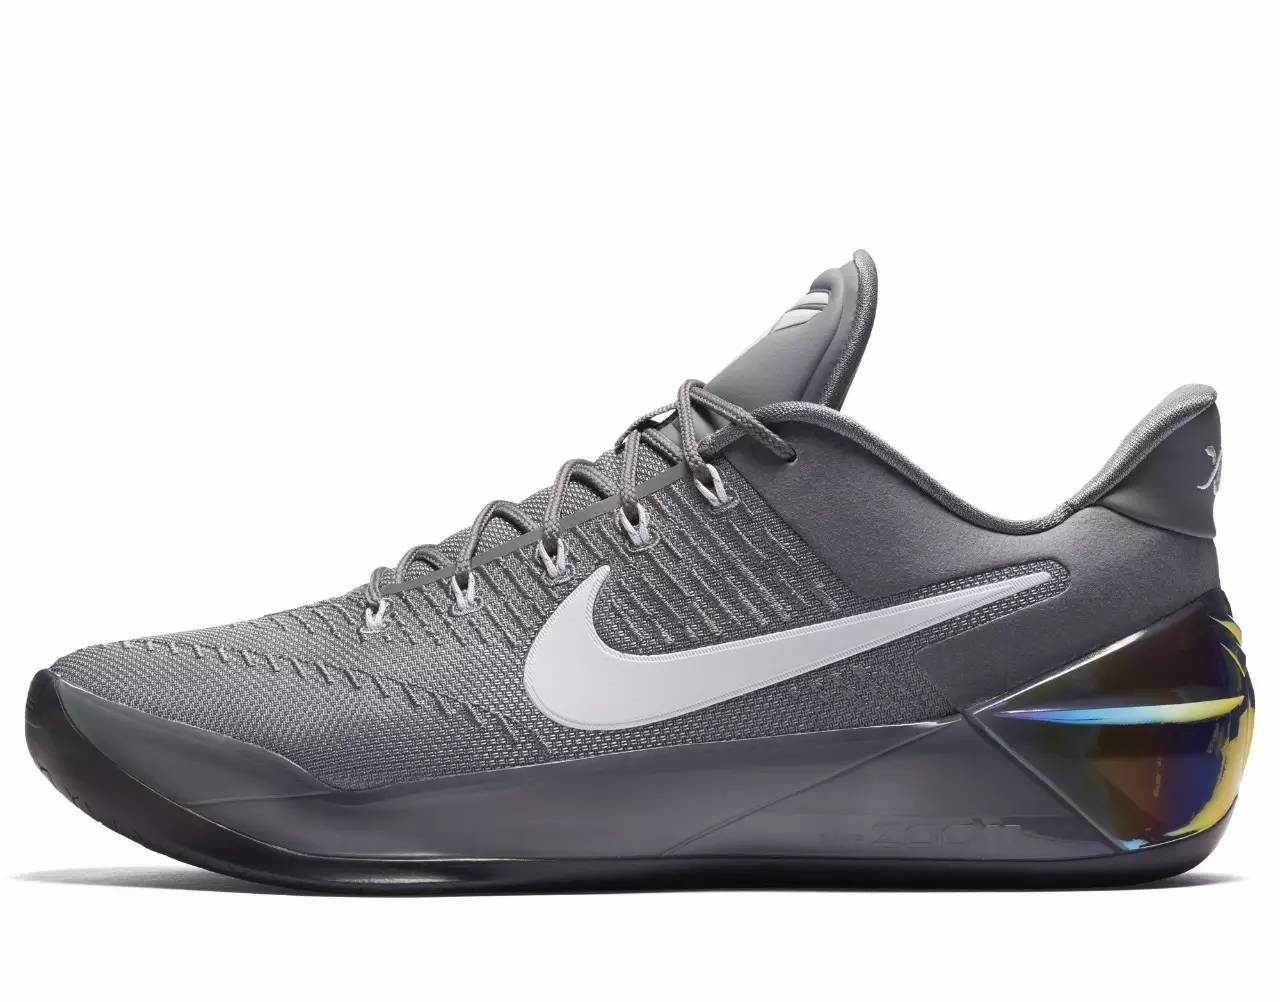 今天凌晨发布的这双Nike Kobe AD 其实就是你们盼望的Kobe 12